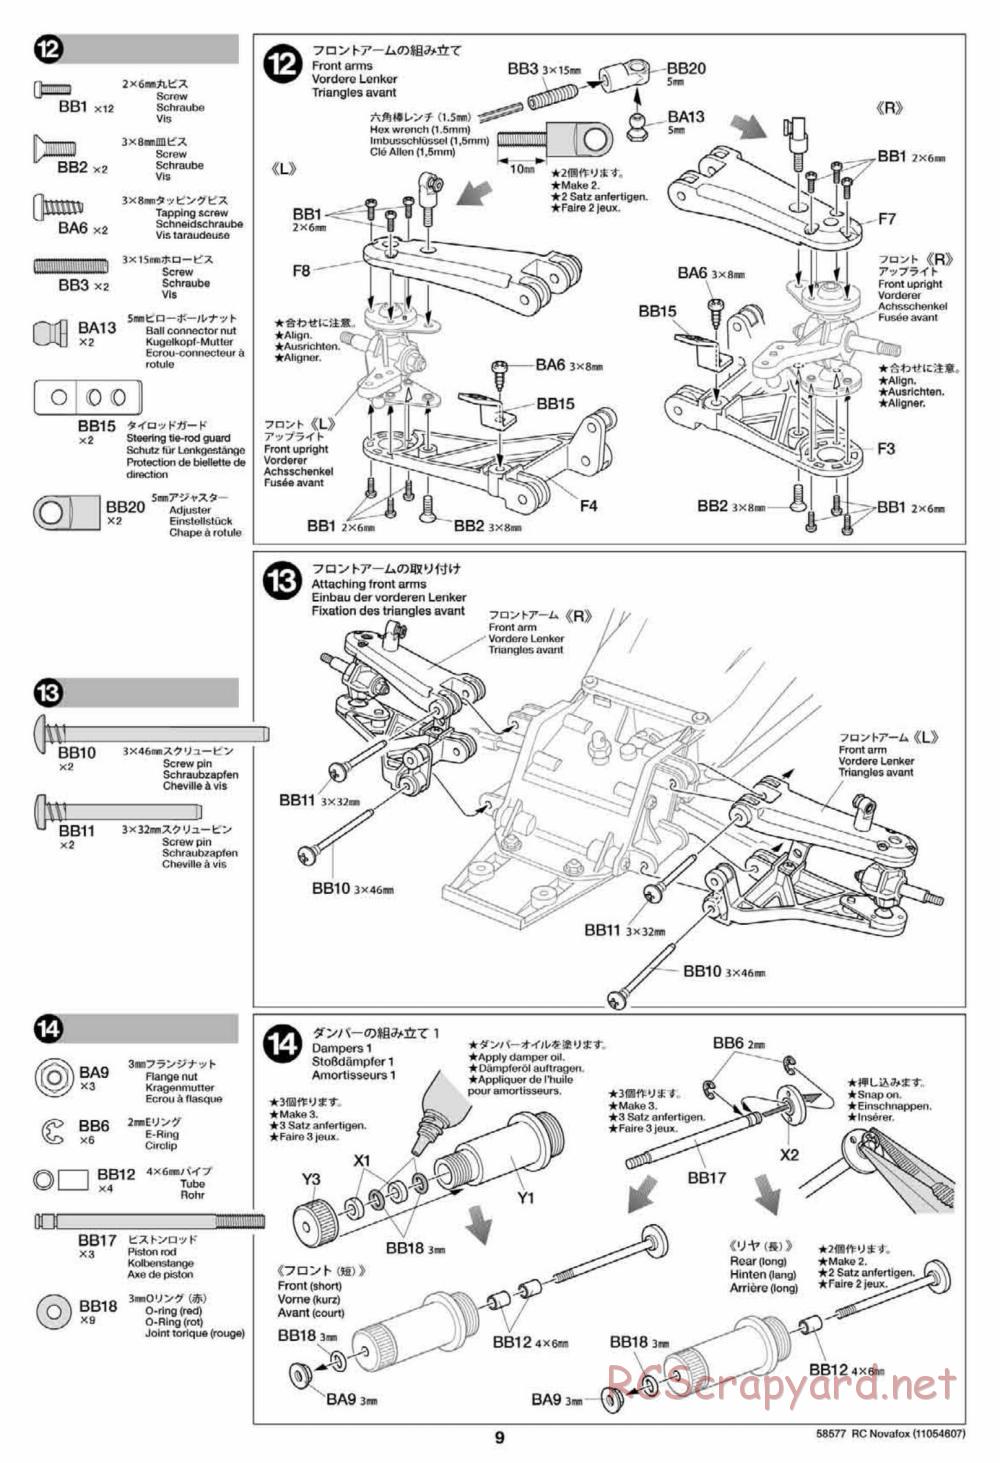 Tamiya - Novafox Chassis - Manual - Page 9